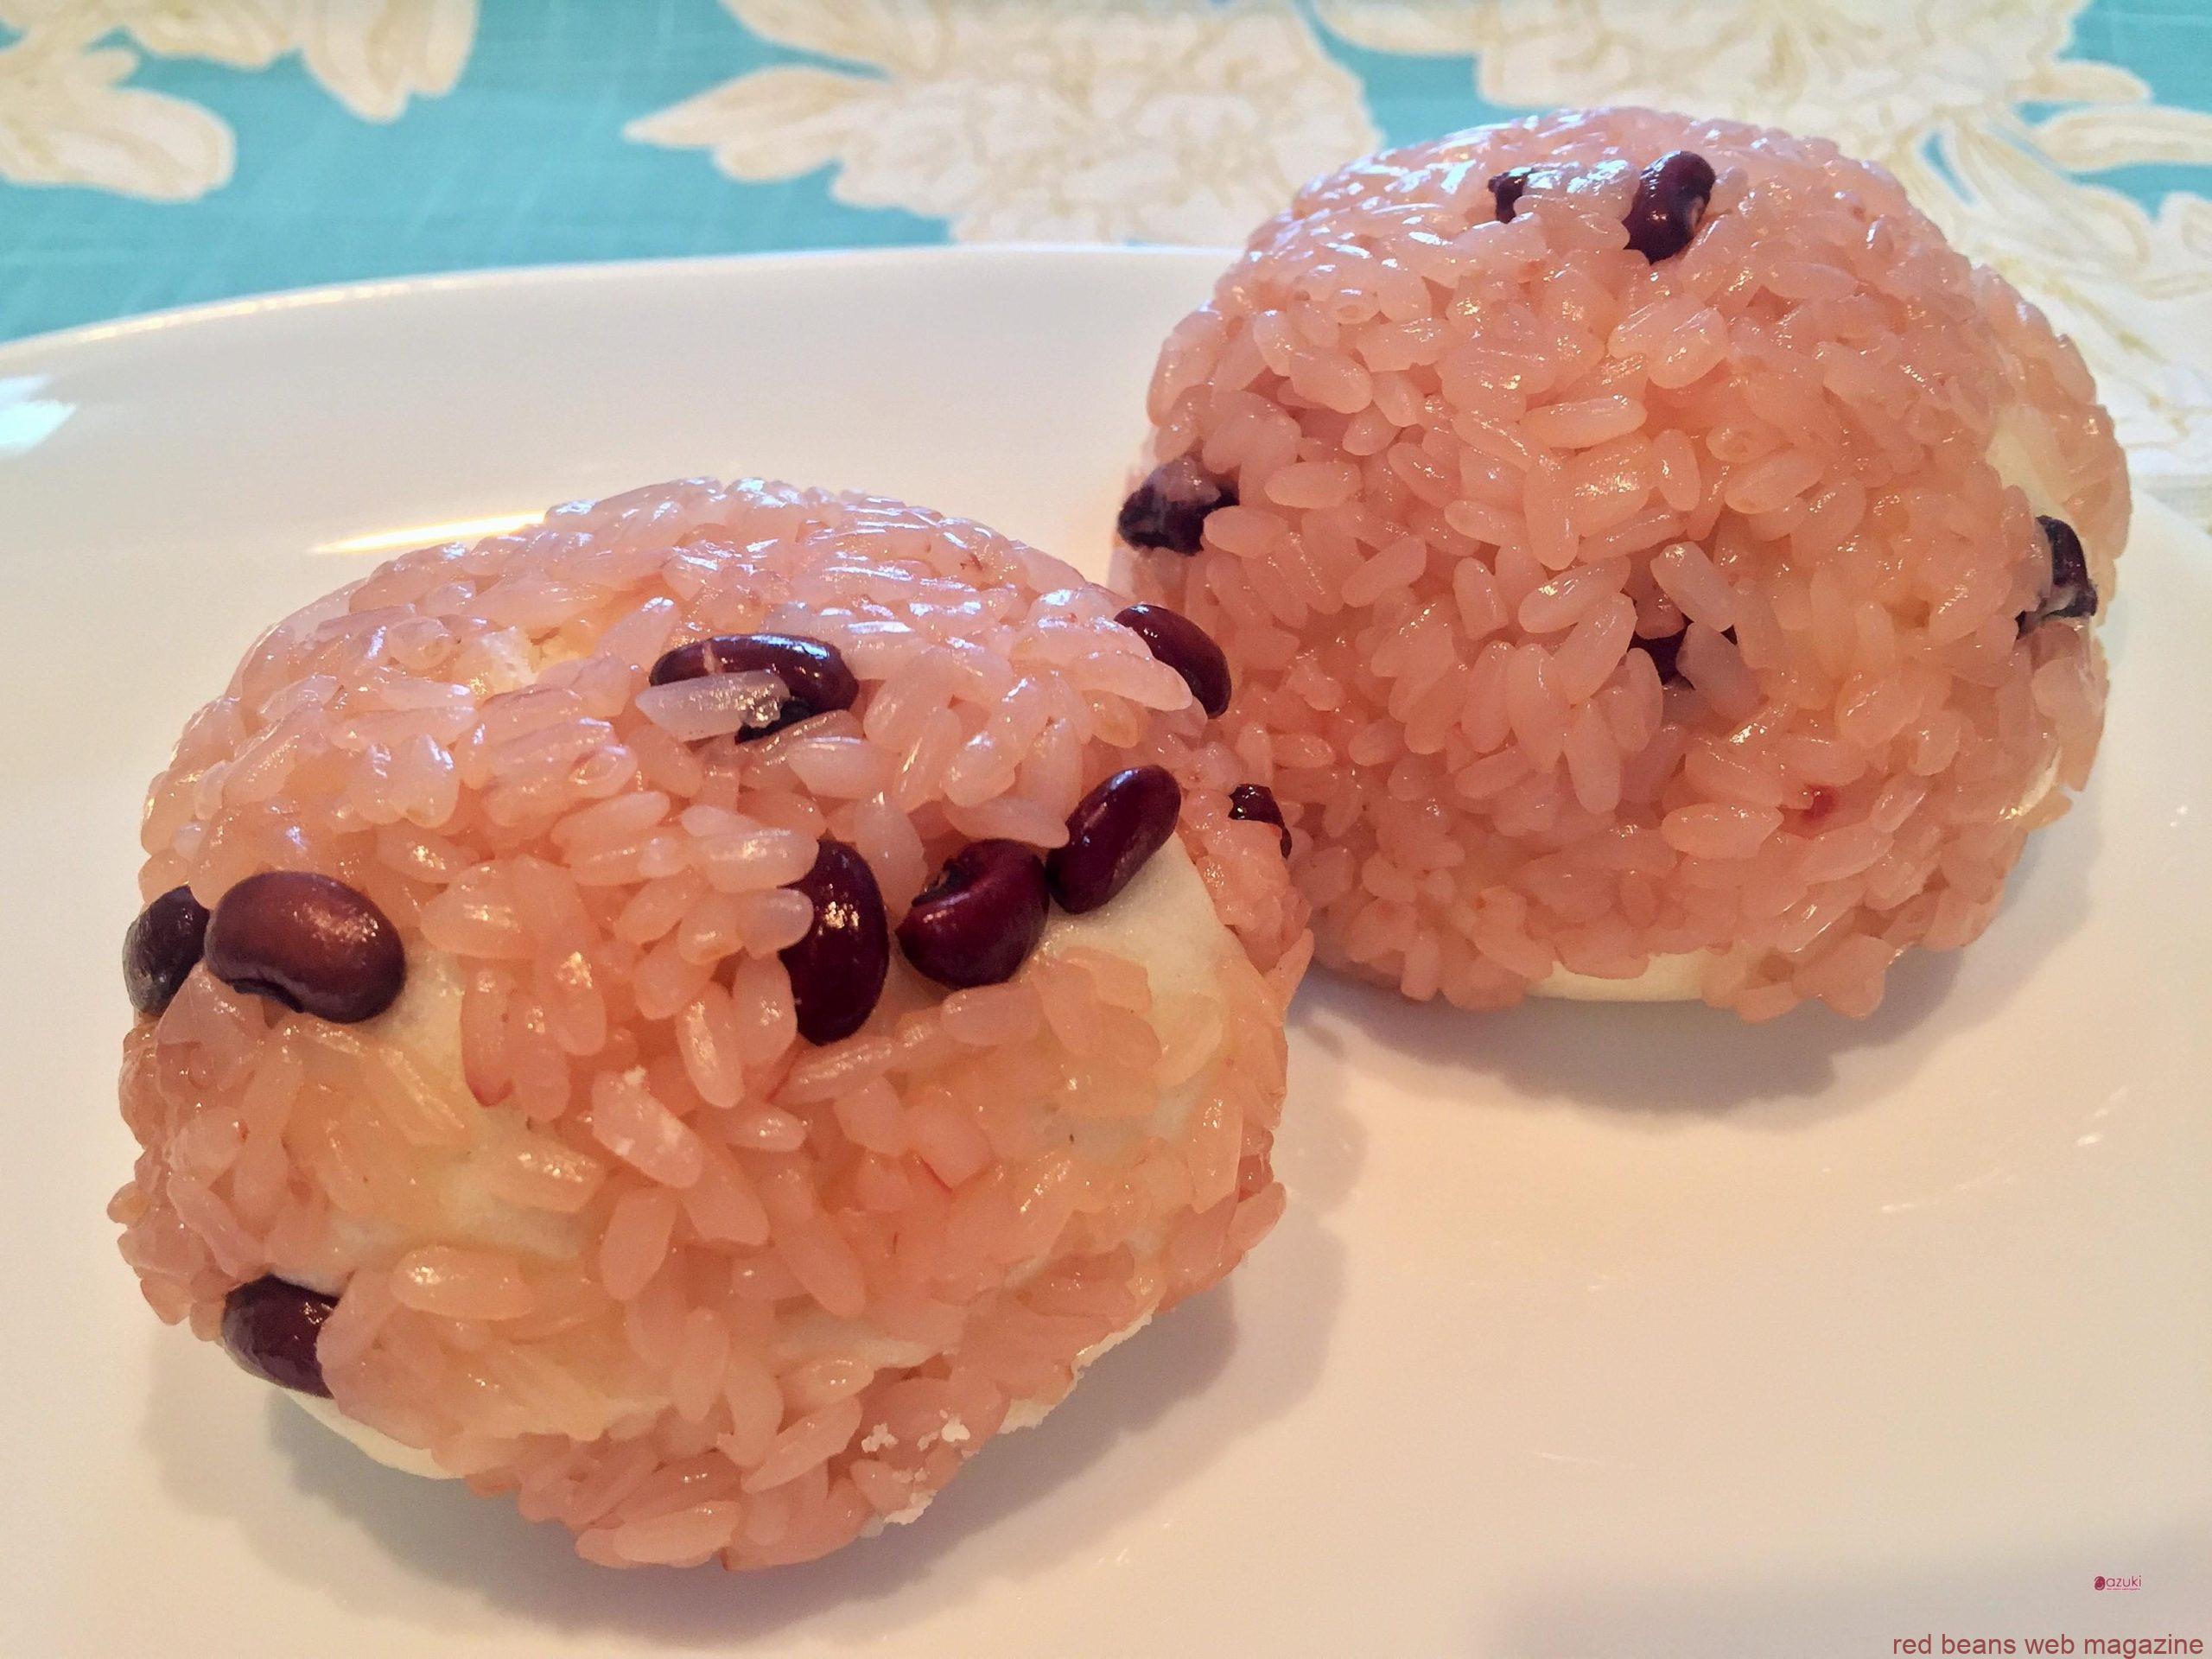 赤飯にくるまれたあん入りまんじゅう！埼玉県の郷土菓子「いがまんじゅう」